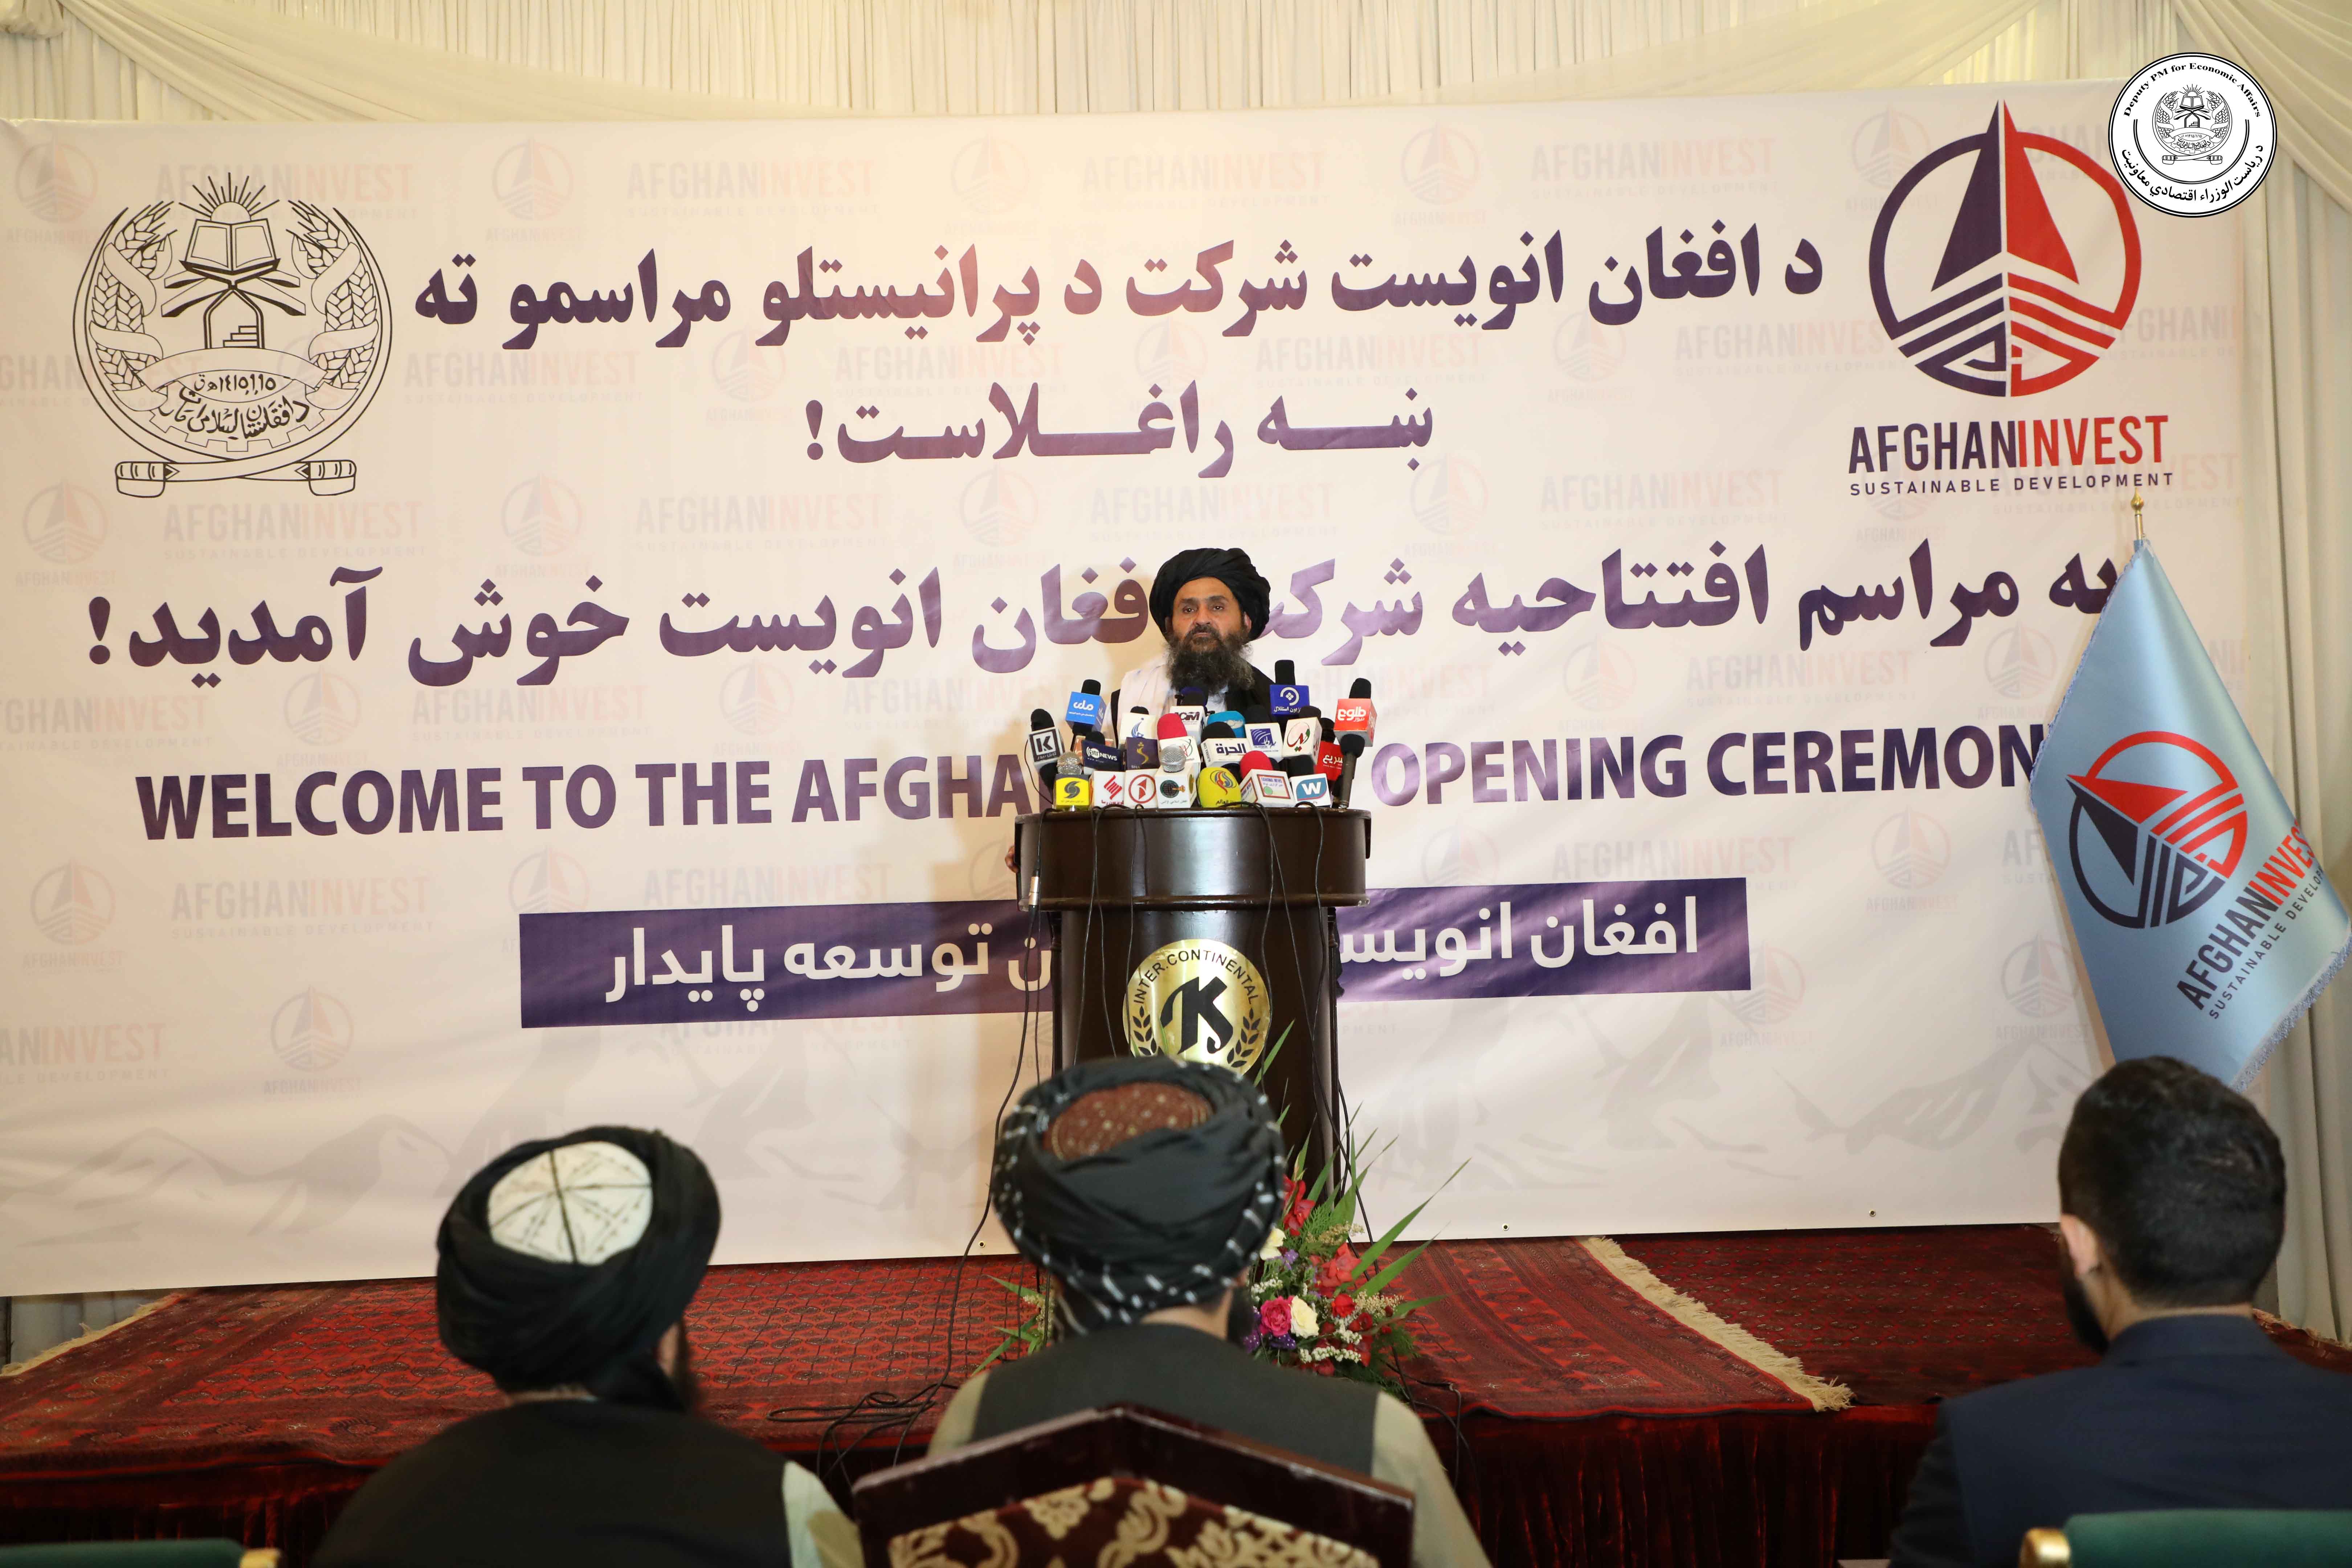 ملا عبدالغنی برادر آخند شرکت محدودالمسوولیت به نام «افغان انویست» را افتتاح کرد